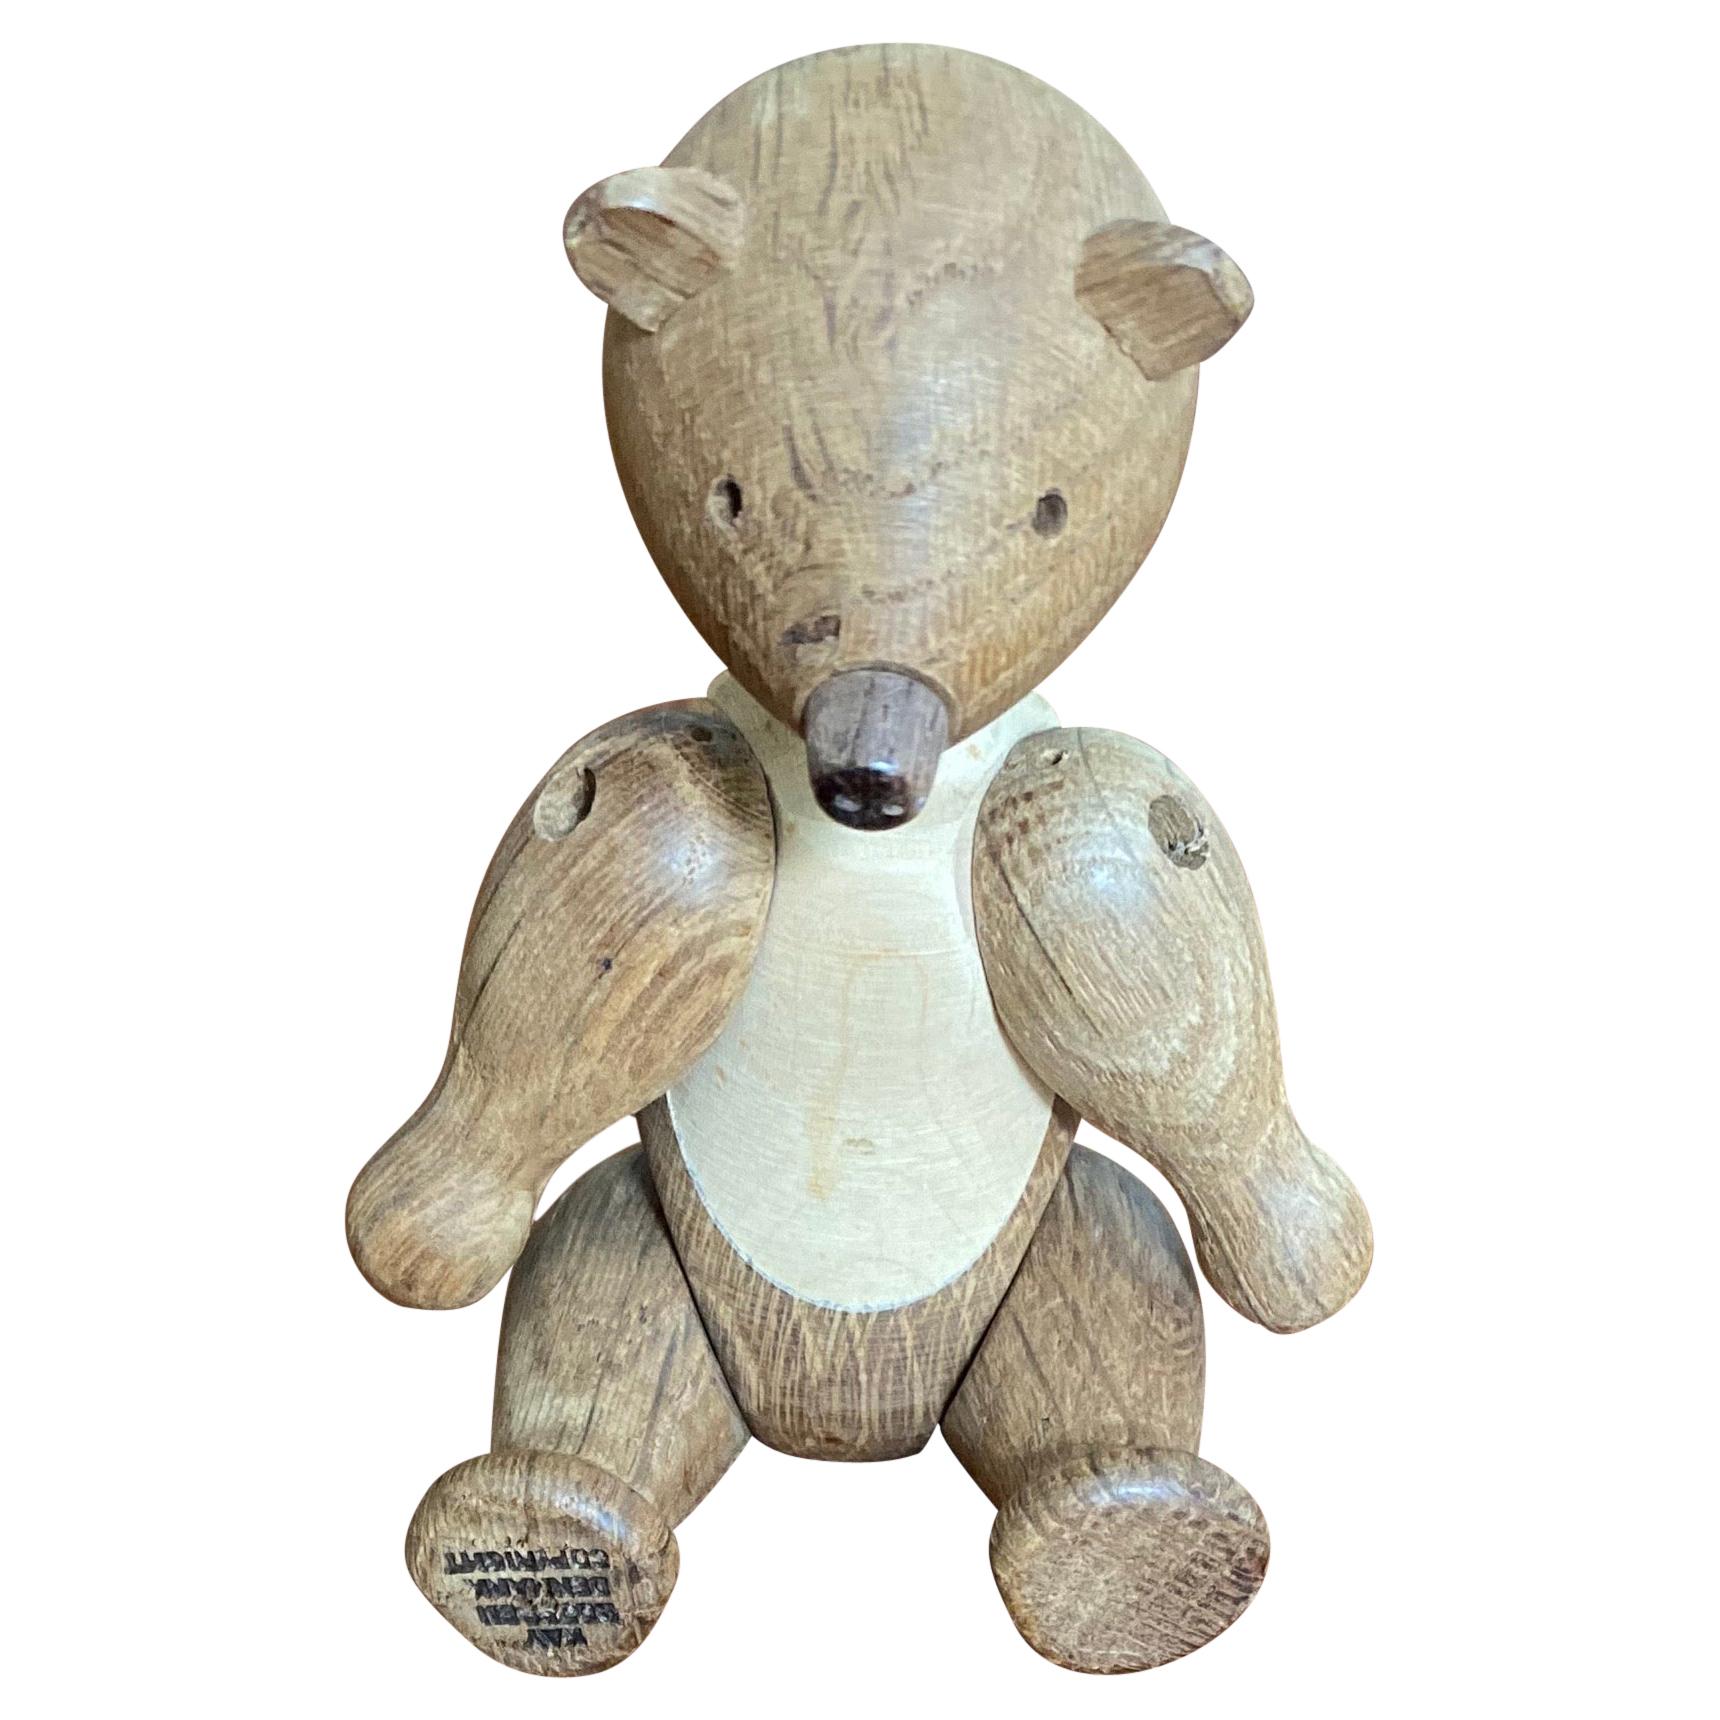 1950s Oak Wood Teddy Bear Designed by Kay Bojesen